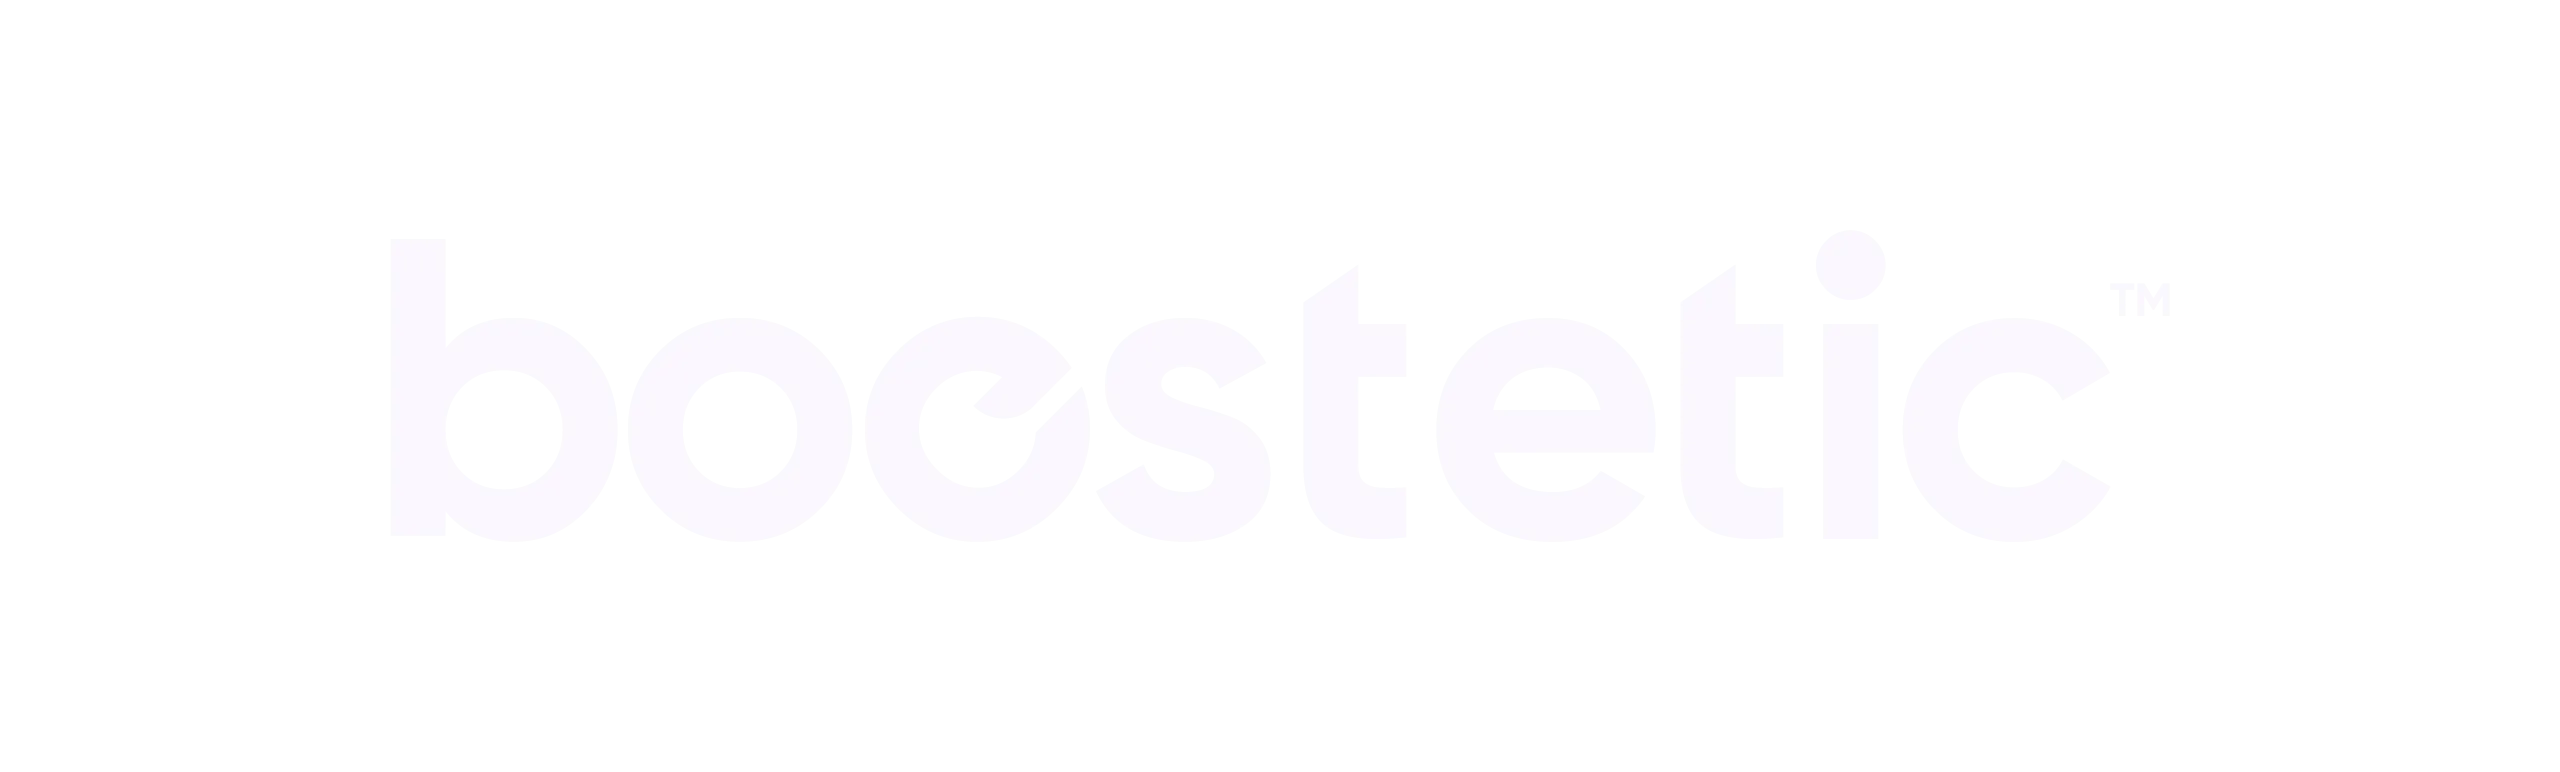 Boostetic Logo - White